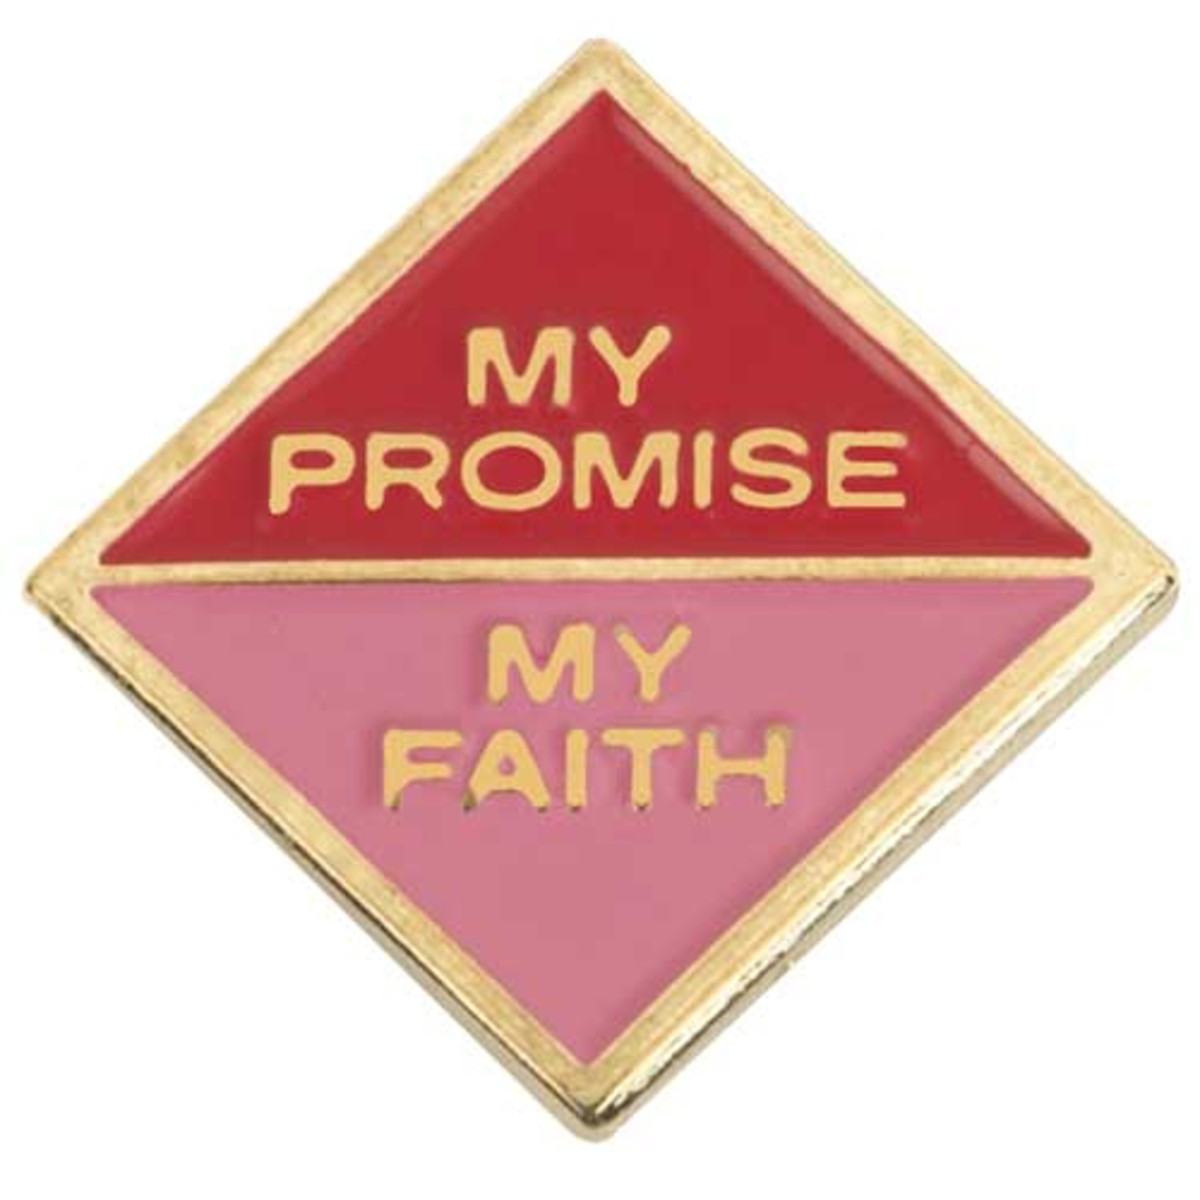 Cad. My Promise My Faith 2